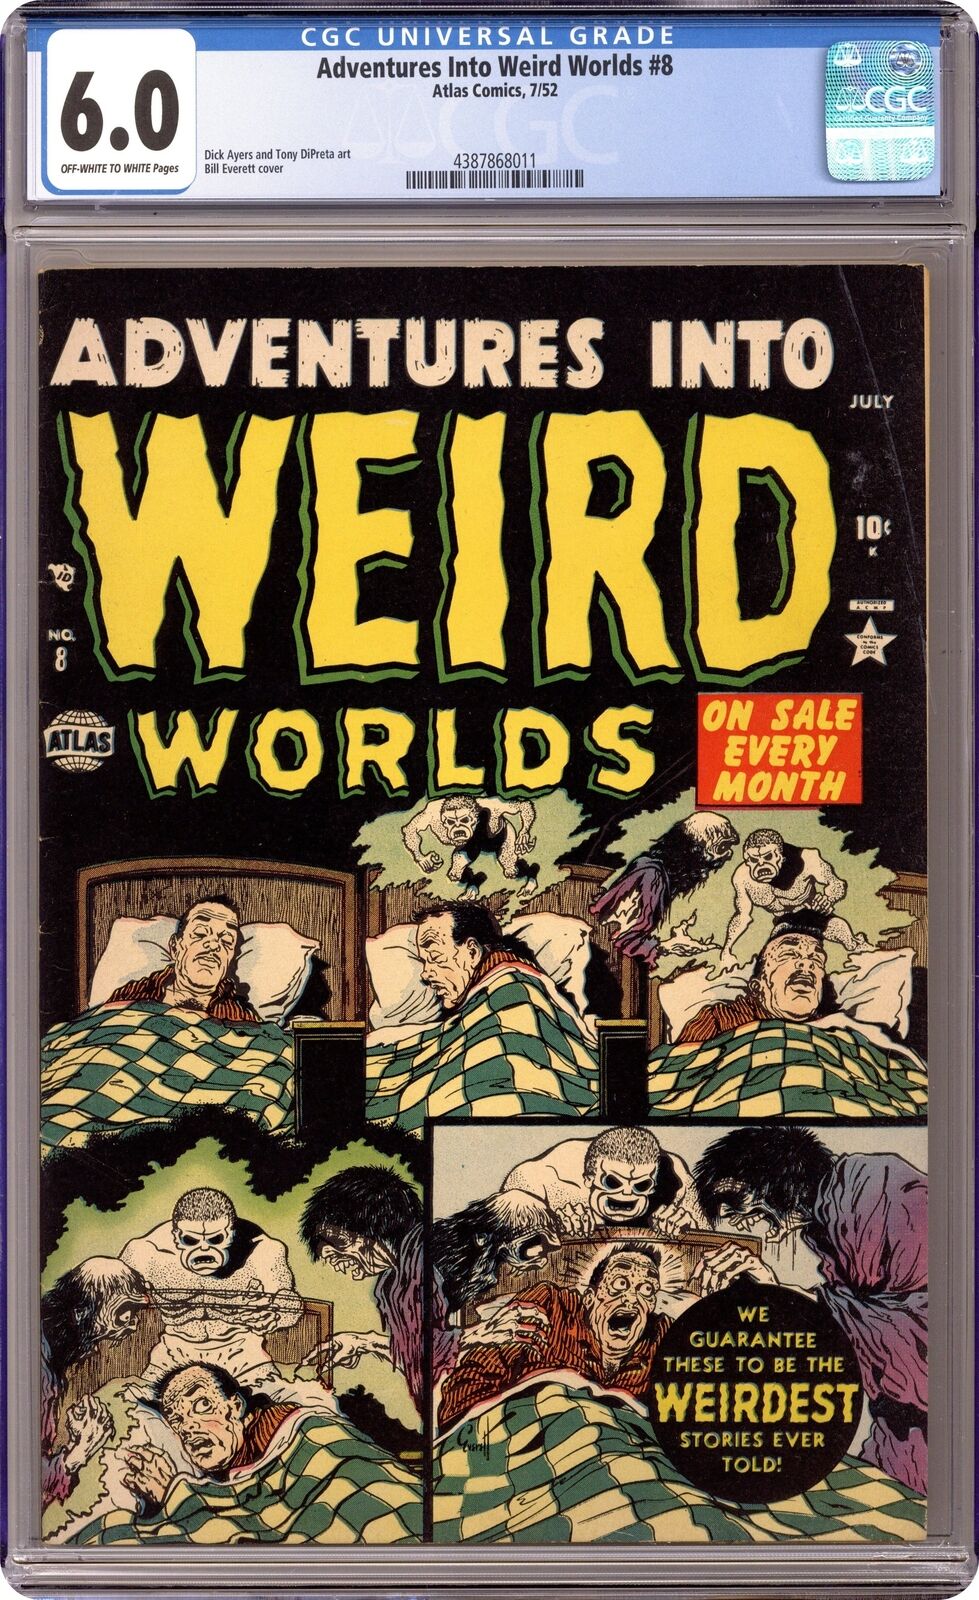 Adventures into Weird Worlds #8 CGC 6.0 1952 4387868011